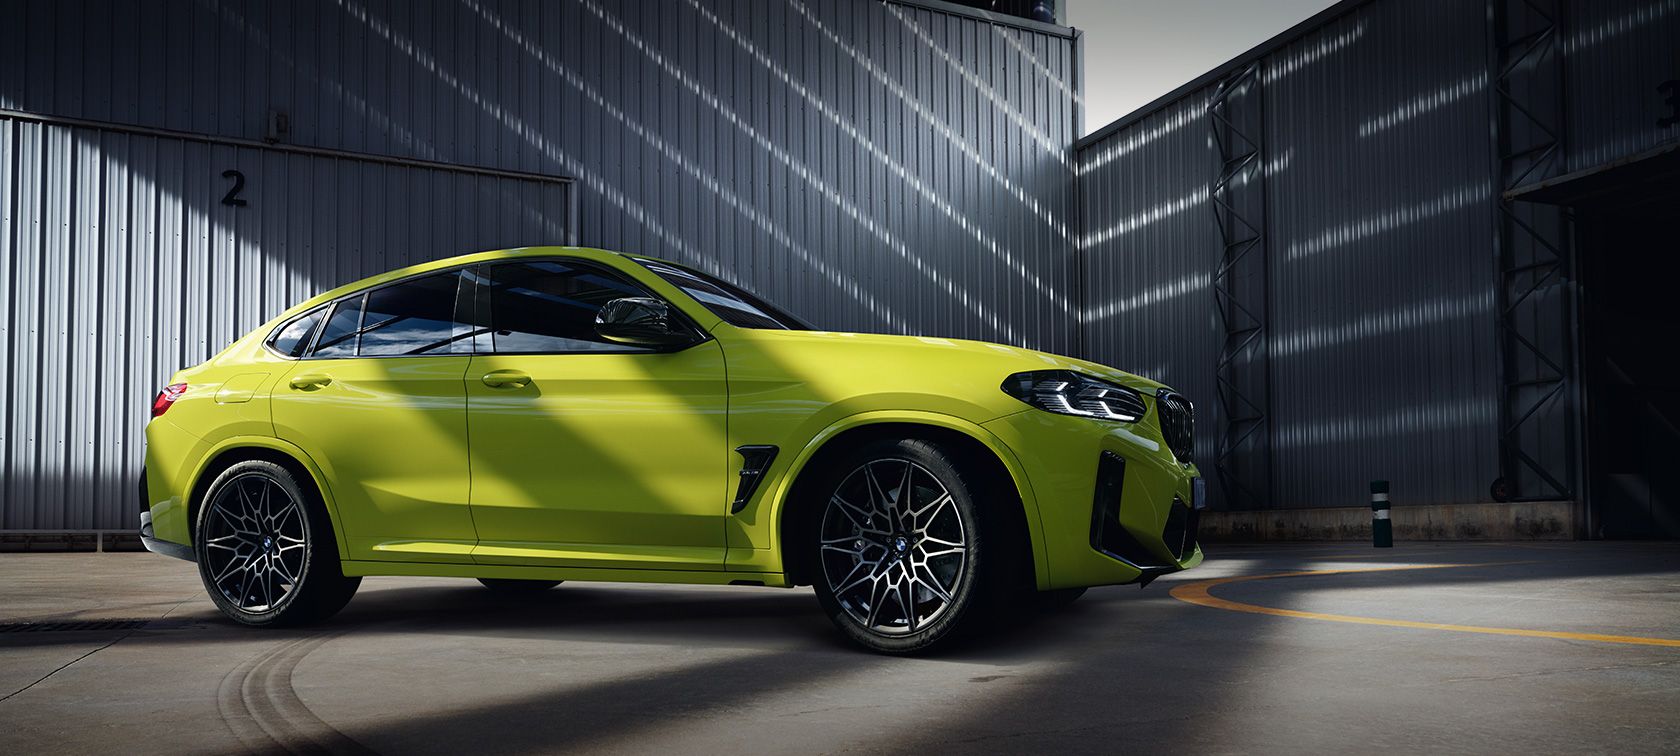 Harga BMW X4 Terbaru, Spesifikasi dan Interior 2022!